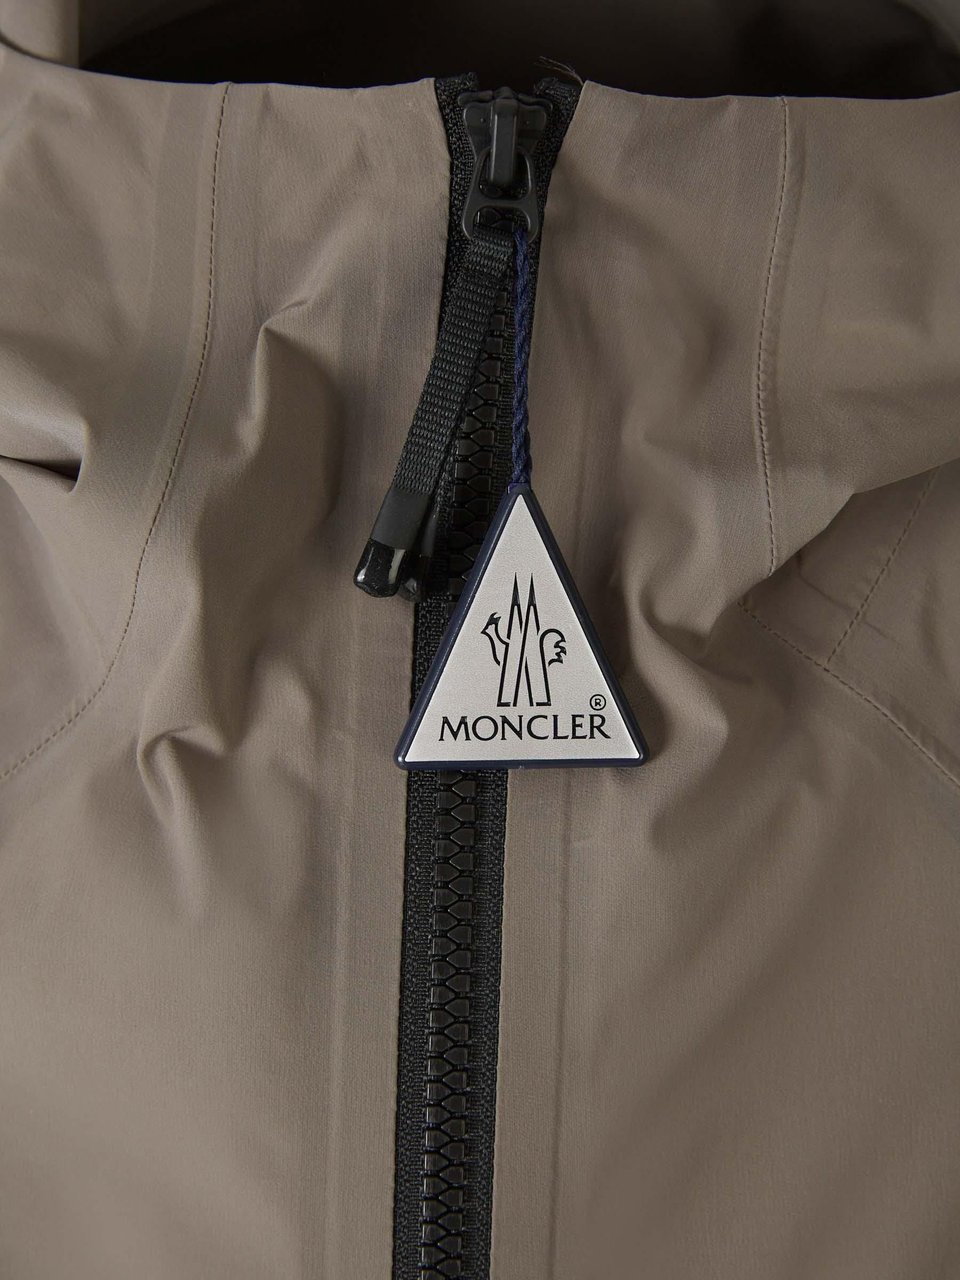 Moncler Kurz Technical Jacket Divers